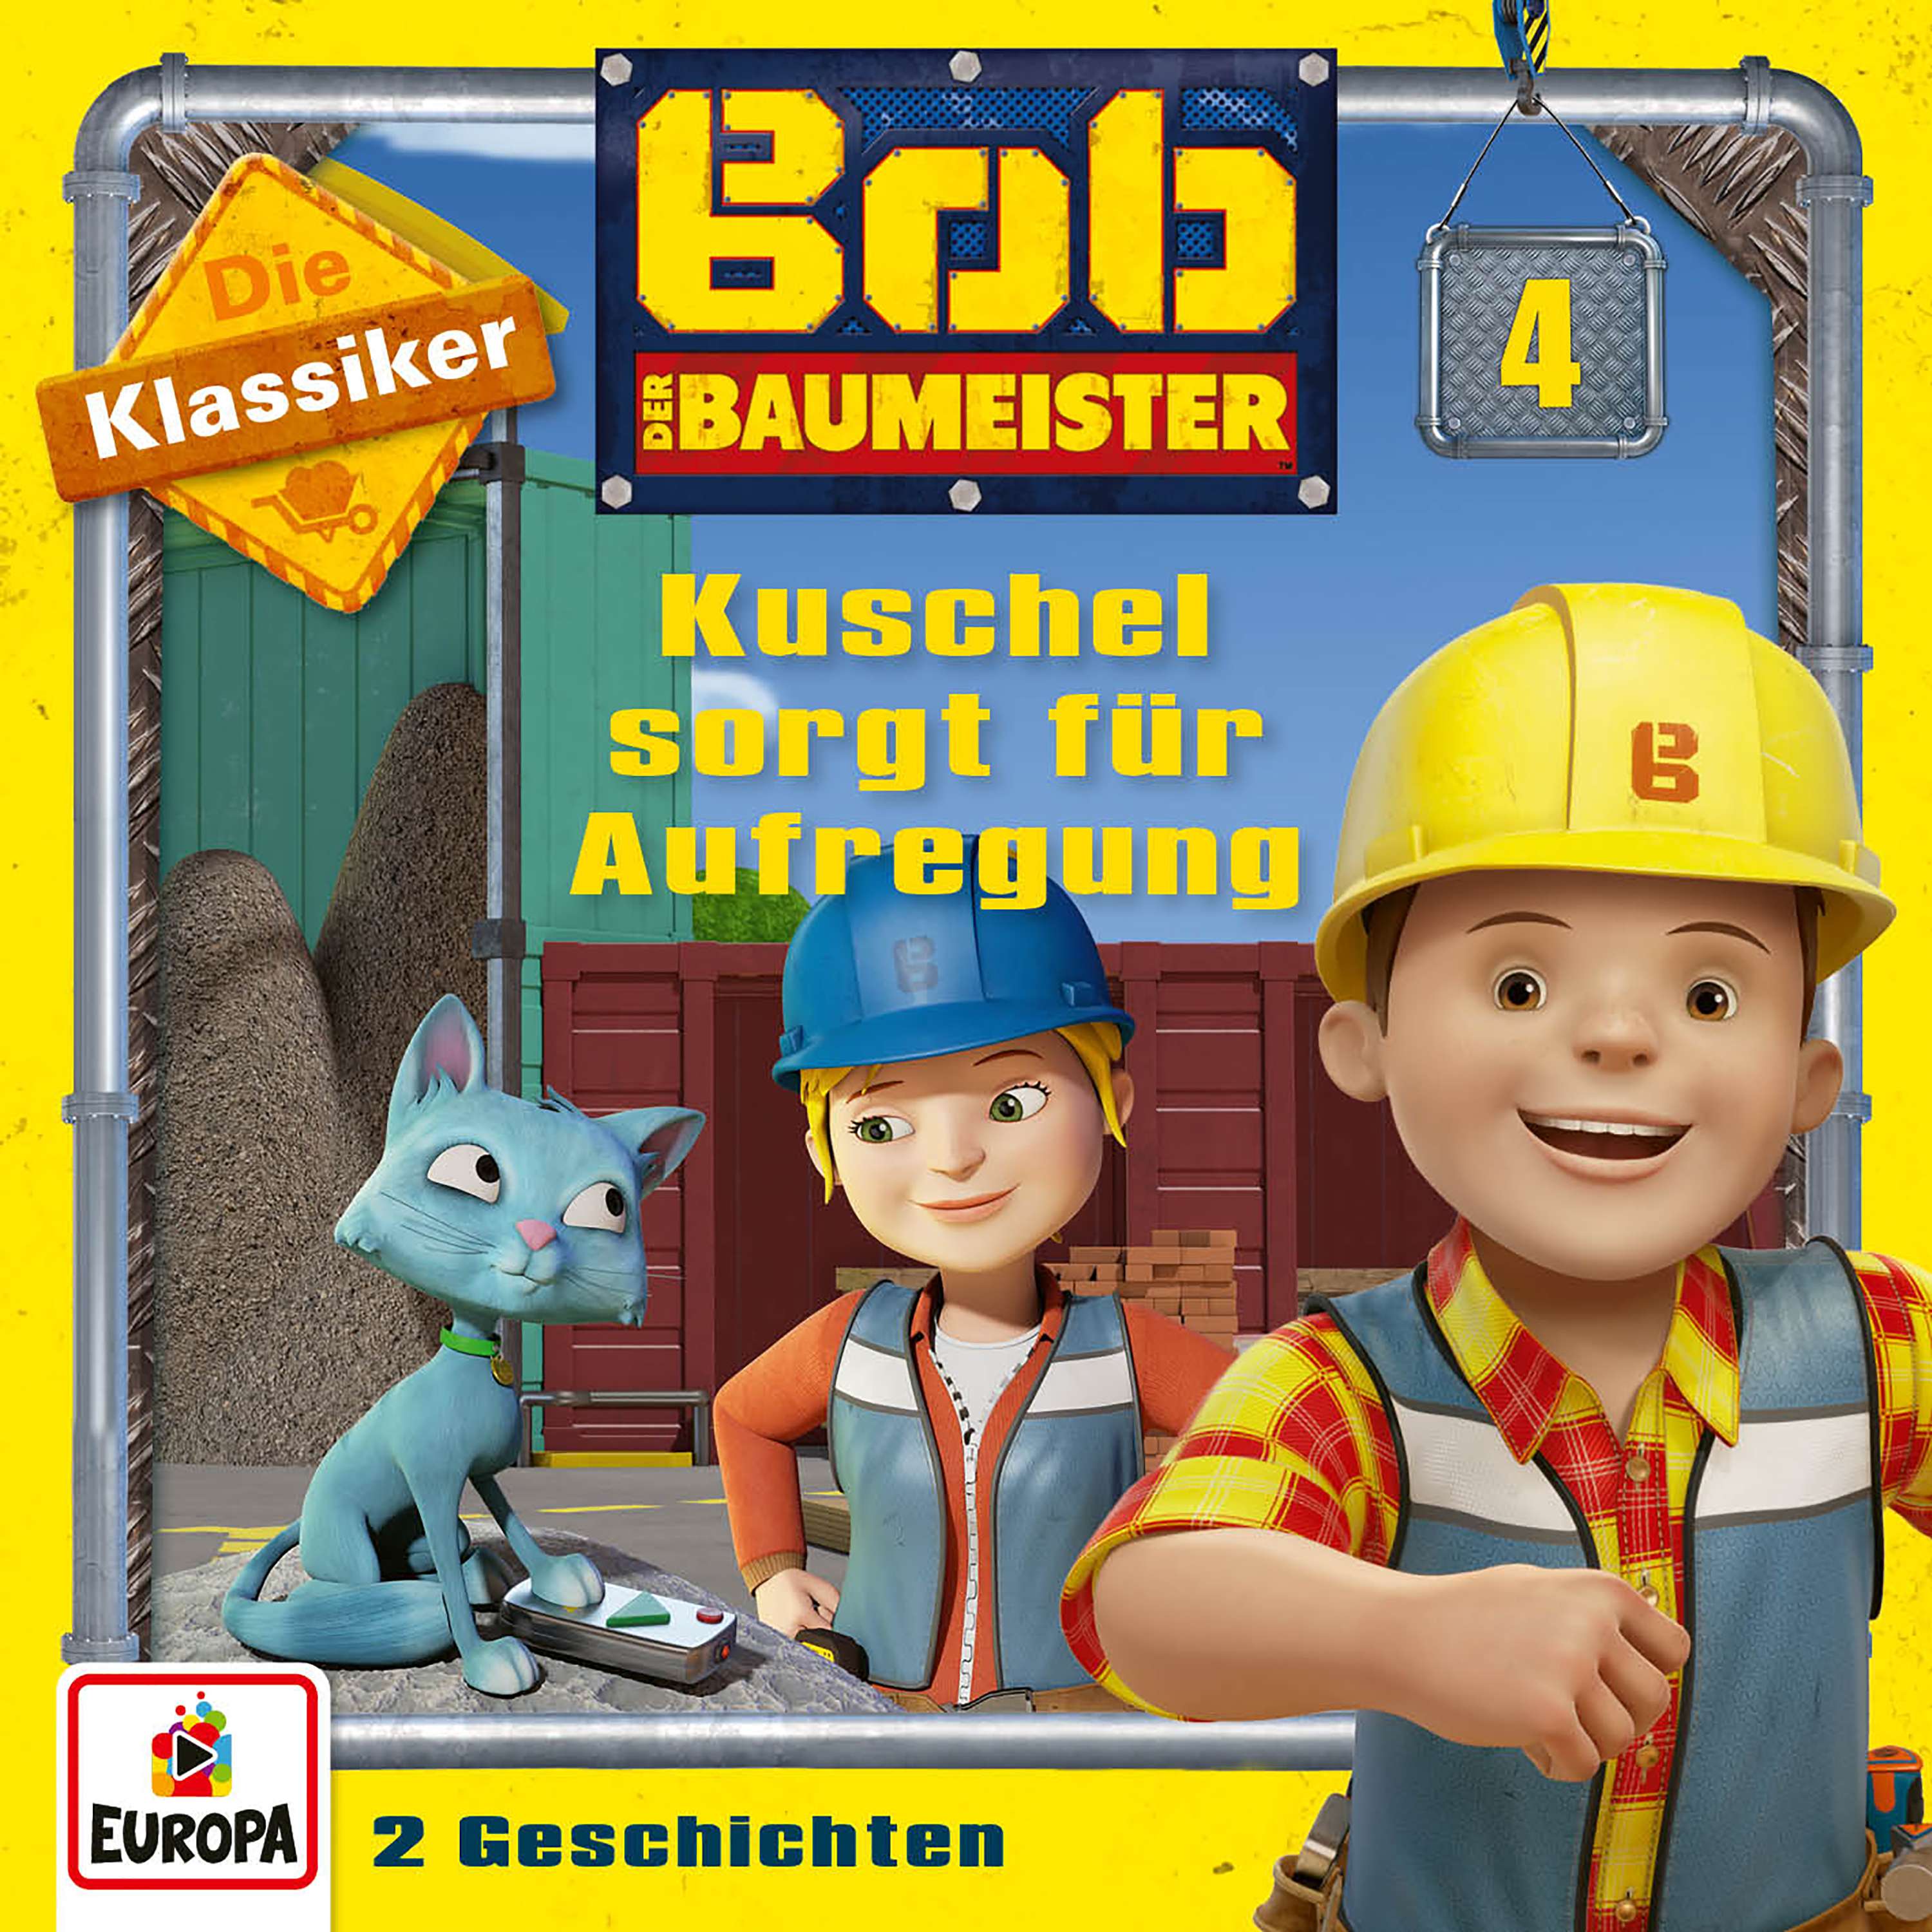 Bob der Baumeister - Kuschel sorgt für Aufregung (Die Klassiker)